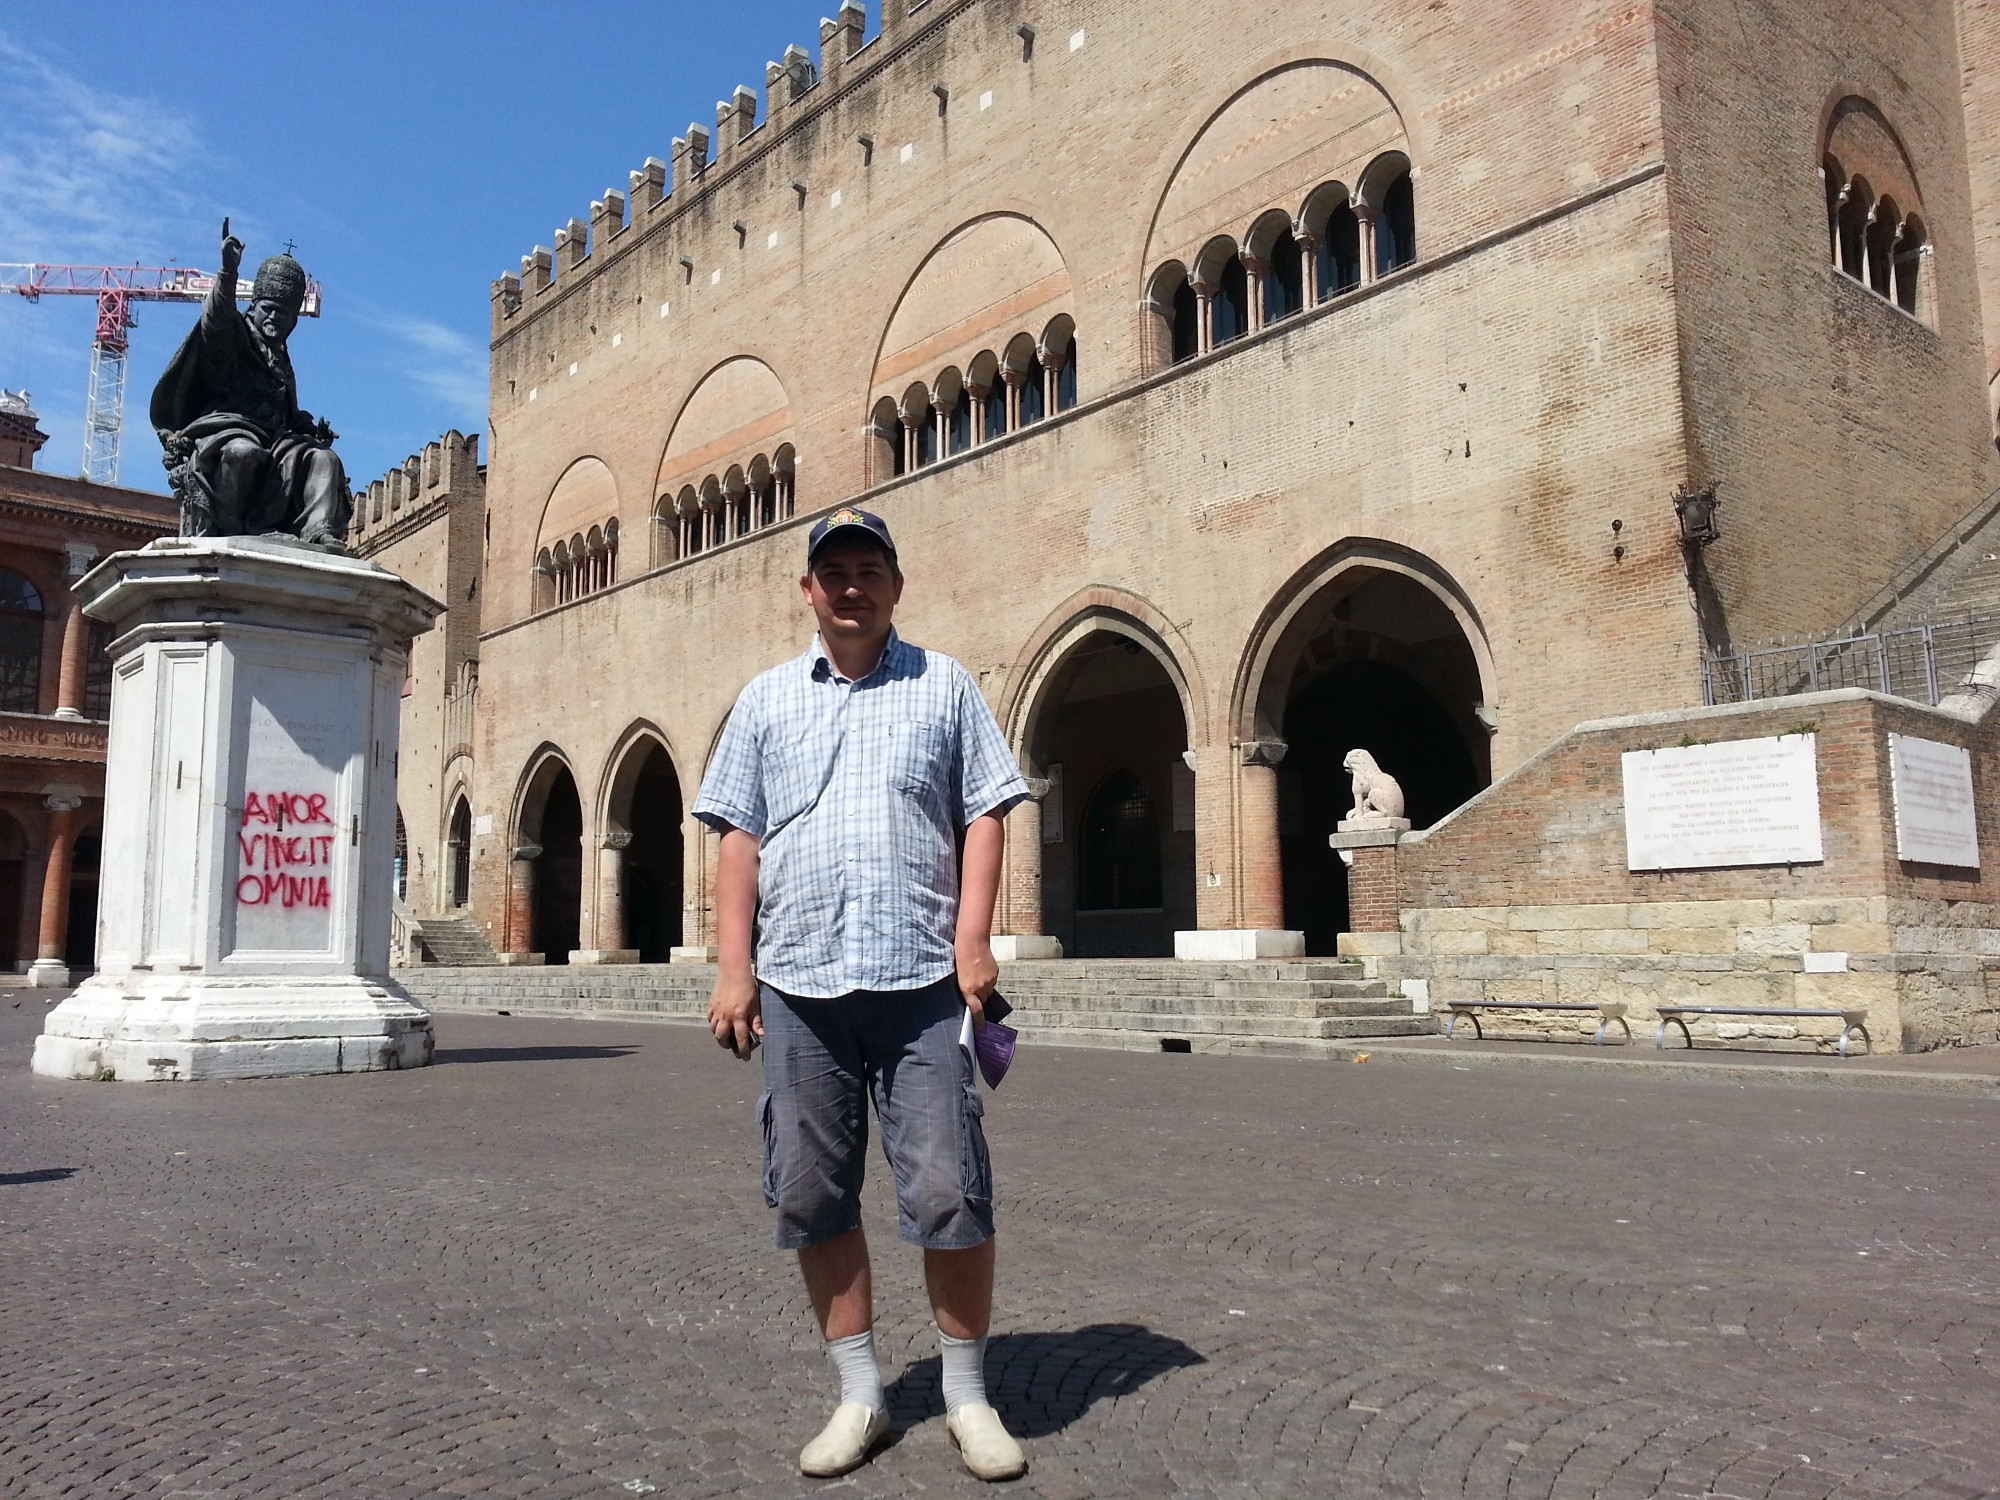 Римини. Я на площади Кавур. (17.07.2014)